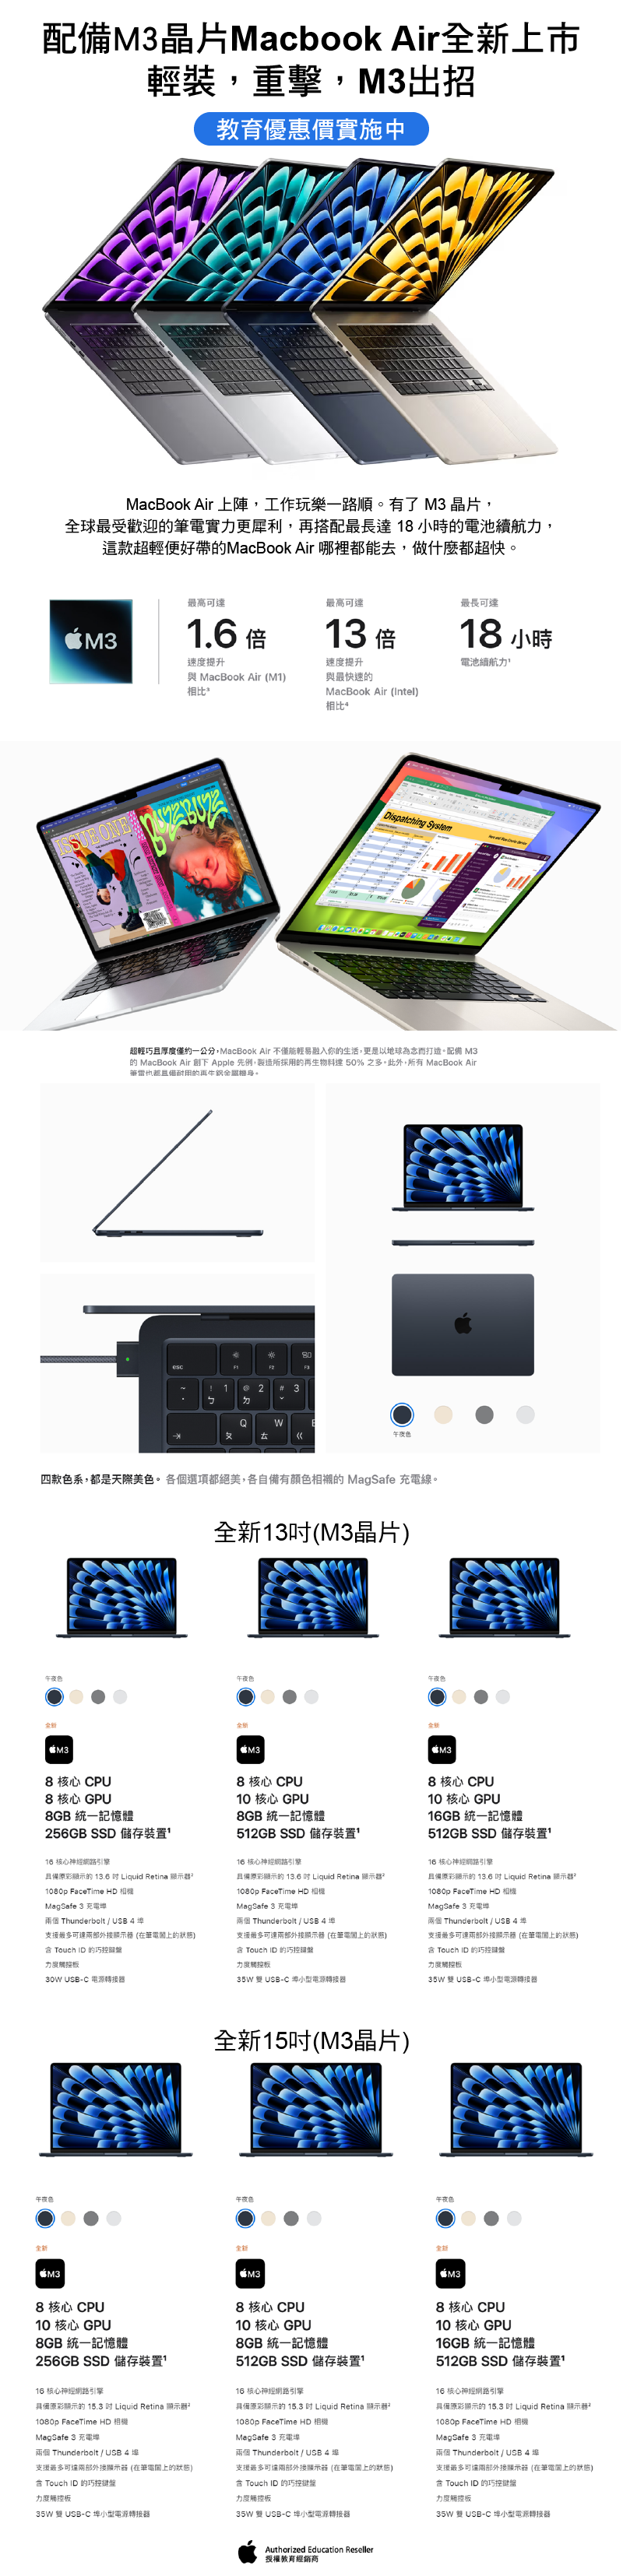 立即選擇您的全新配備M3 MacBook Air - 教育優惠實施中